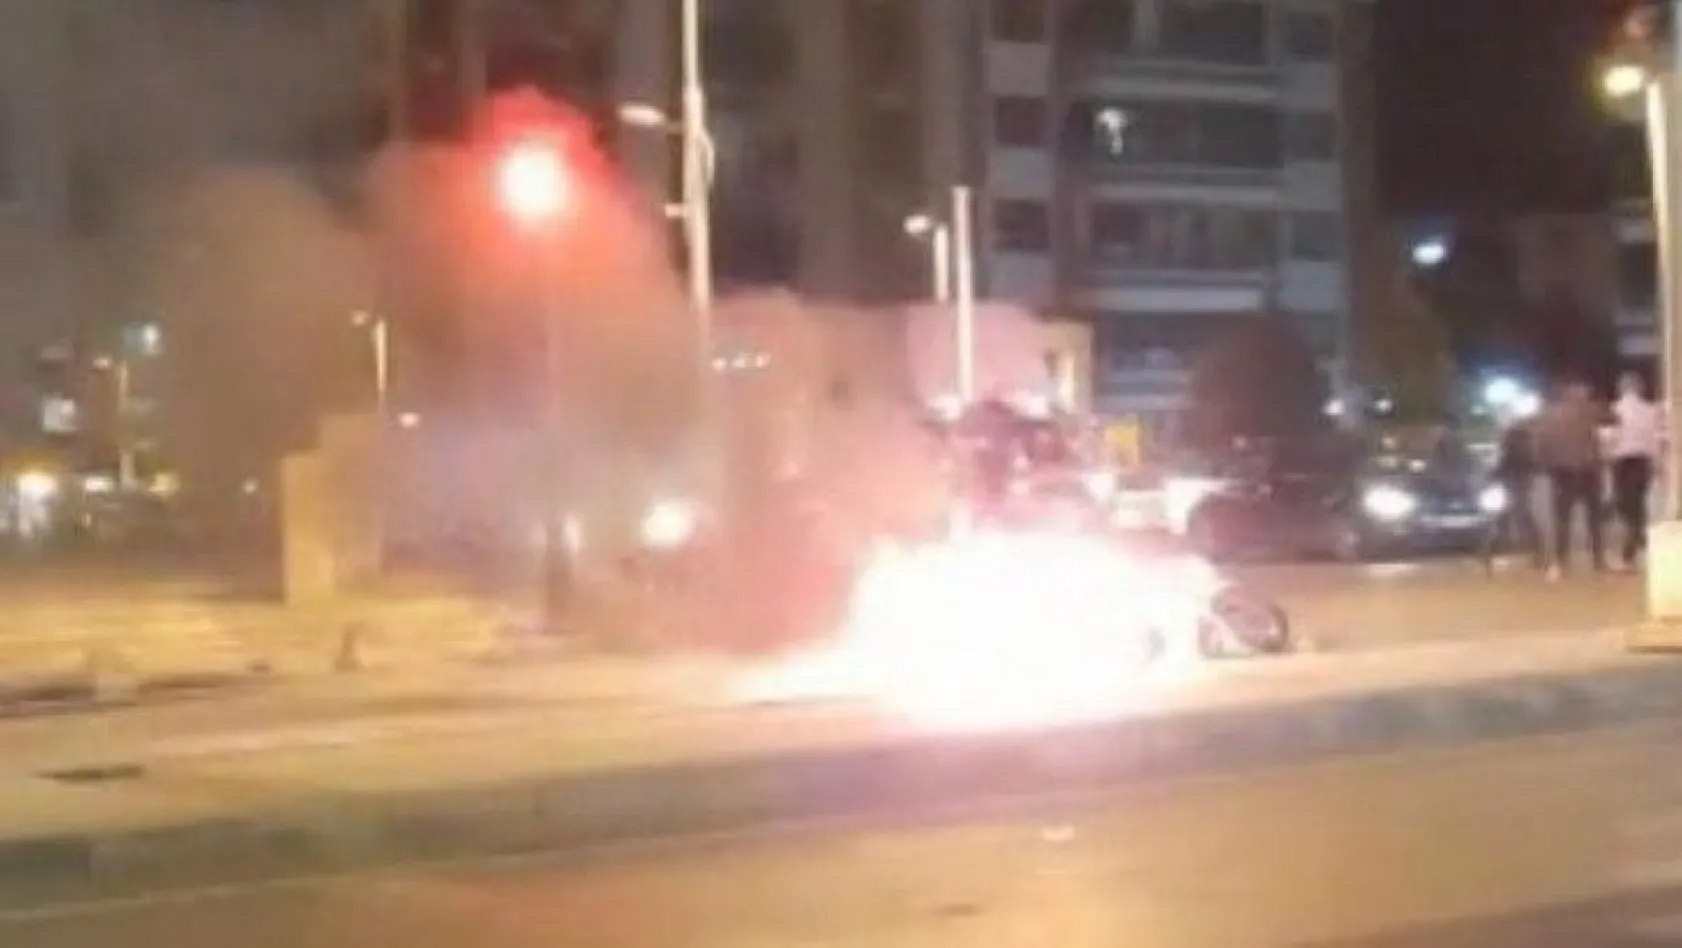 Malatya'da motosiklet yangını korkuttu